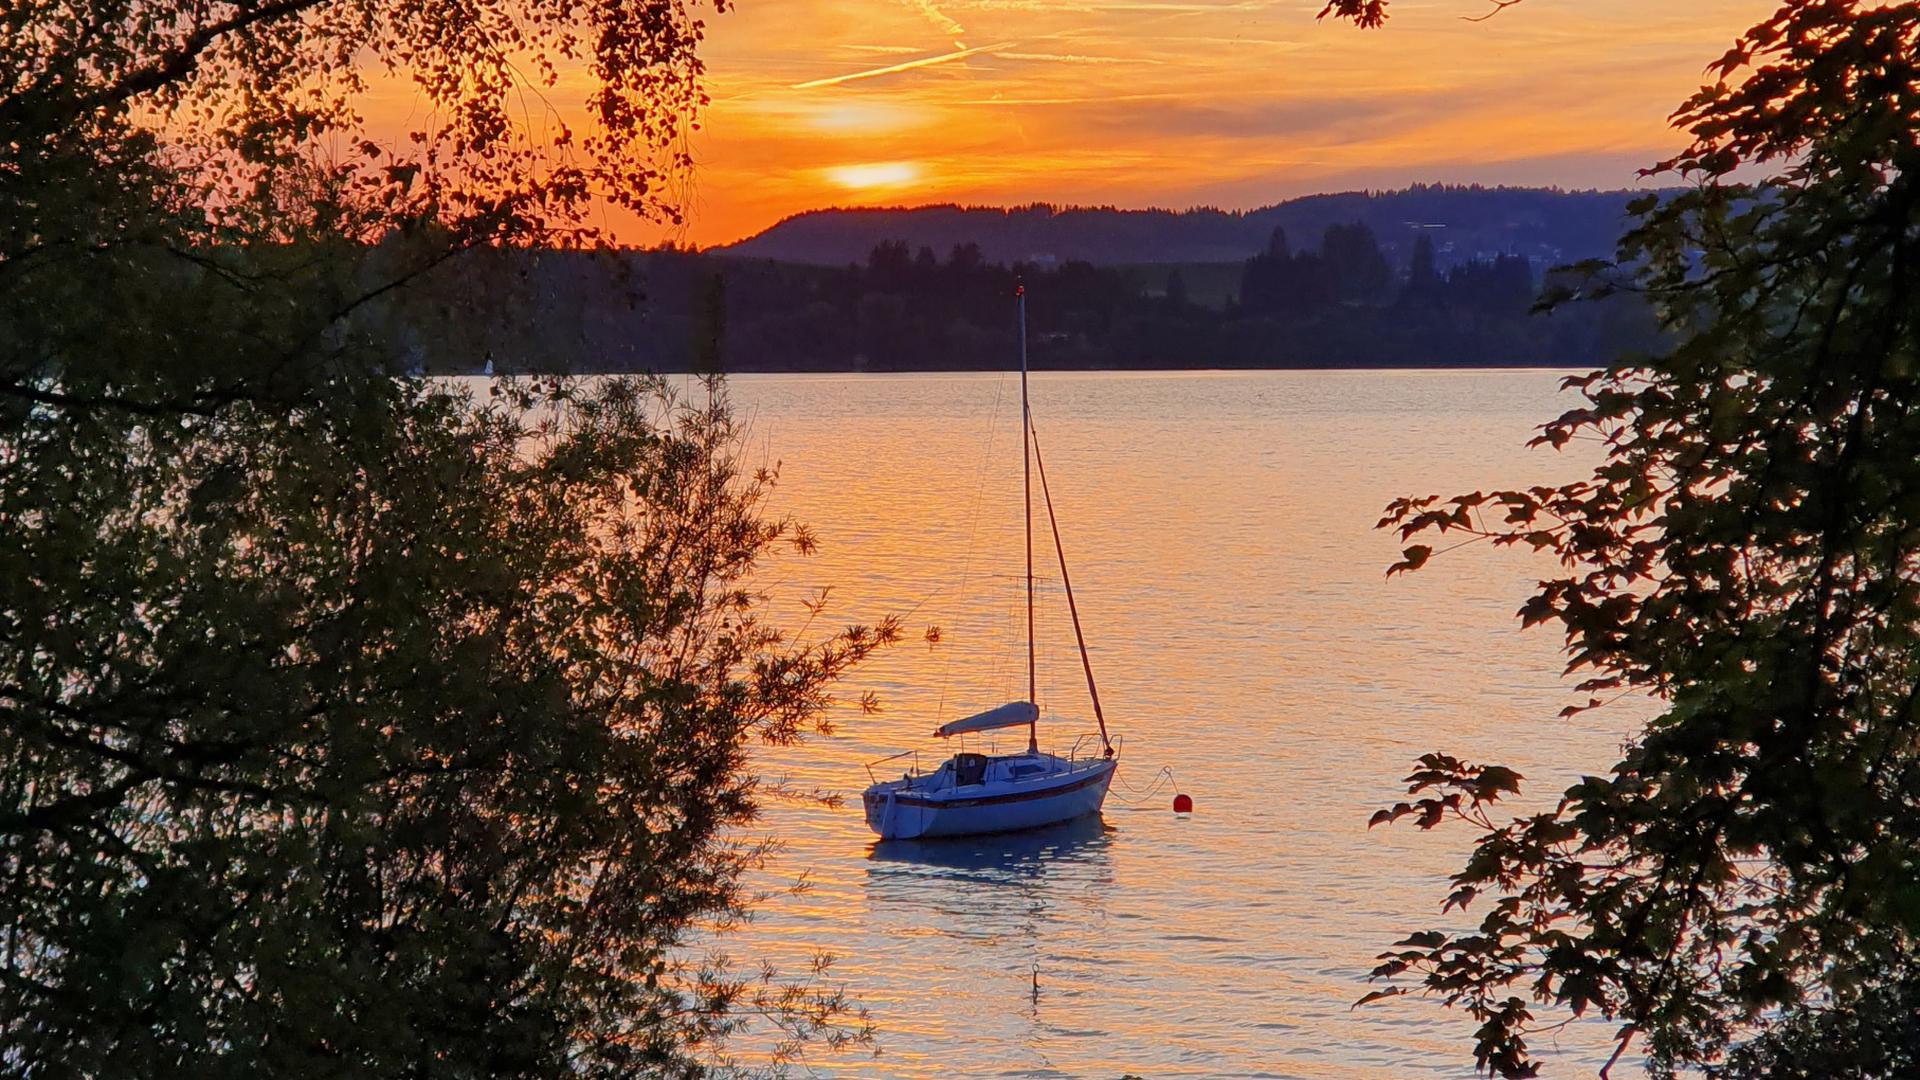 die Sonnenuntergänge habe ich am Forggensee in Schwangau/Bayern fotografiert. Dort verbrachte ich im Juni meinen Urlaub. 


Viele Grüße aus Bruchsal-Untergrombach
Petra Wolf
Tel. 07257 5128
